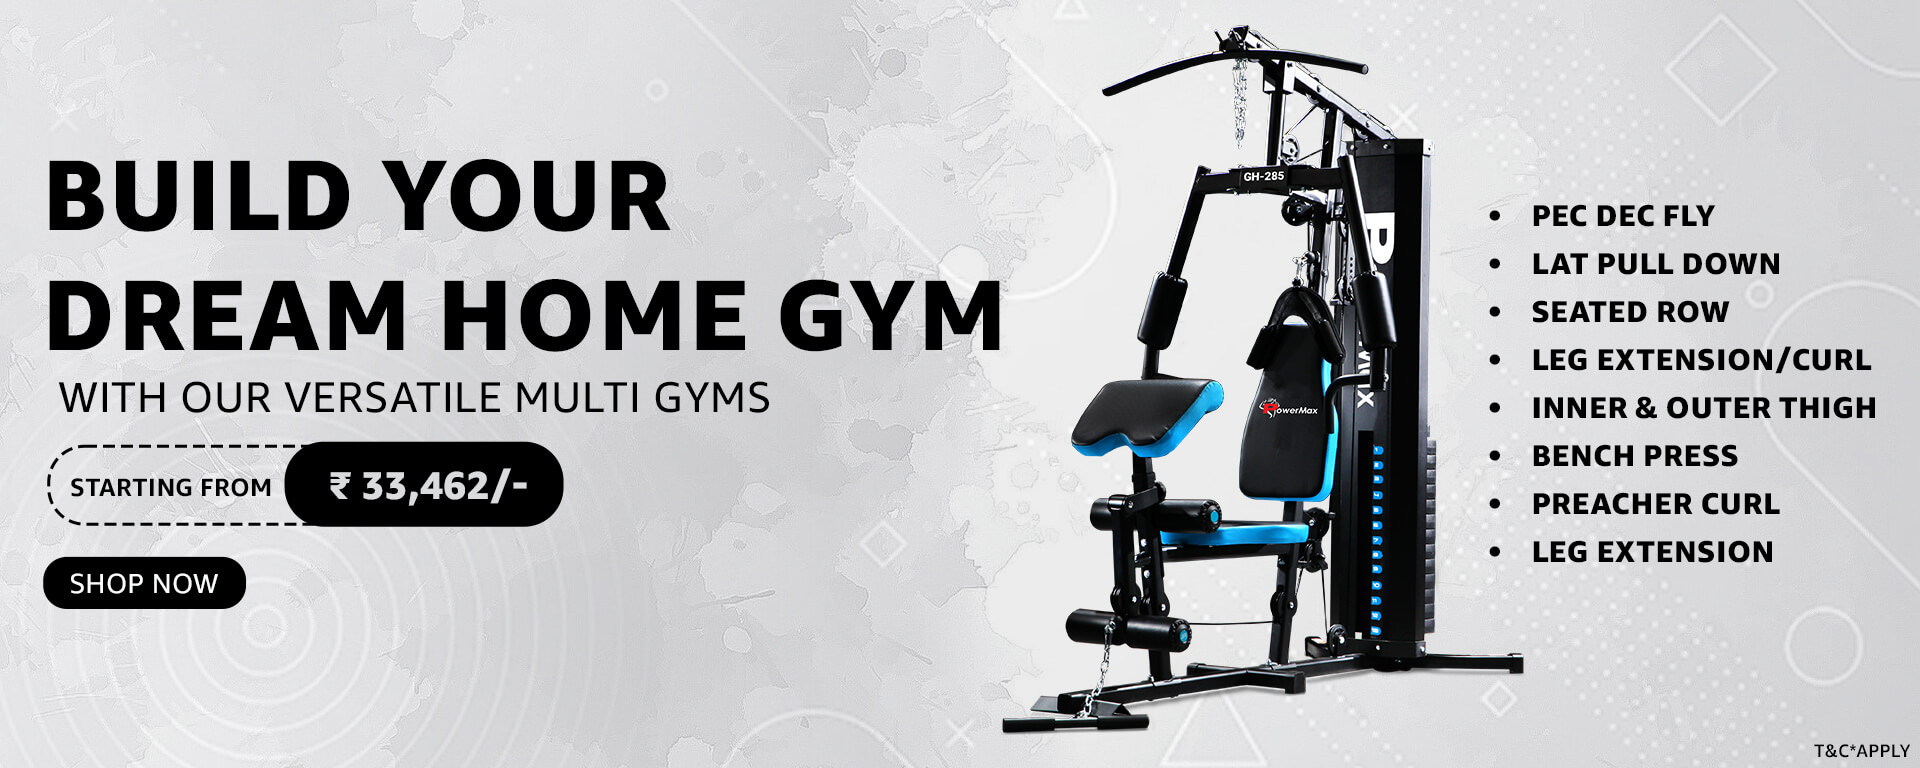 Build your dream home gym